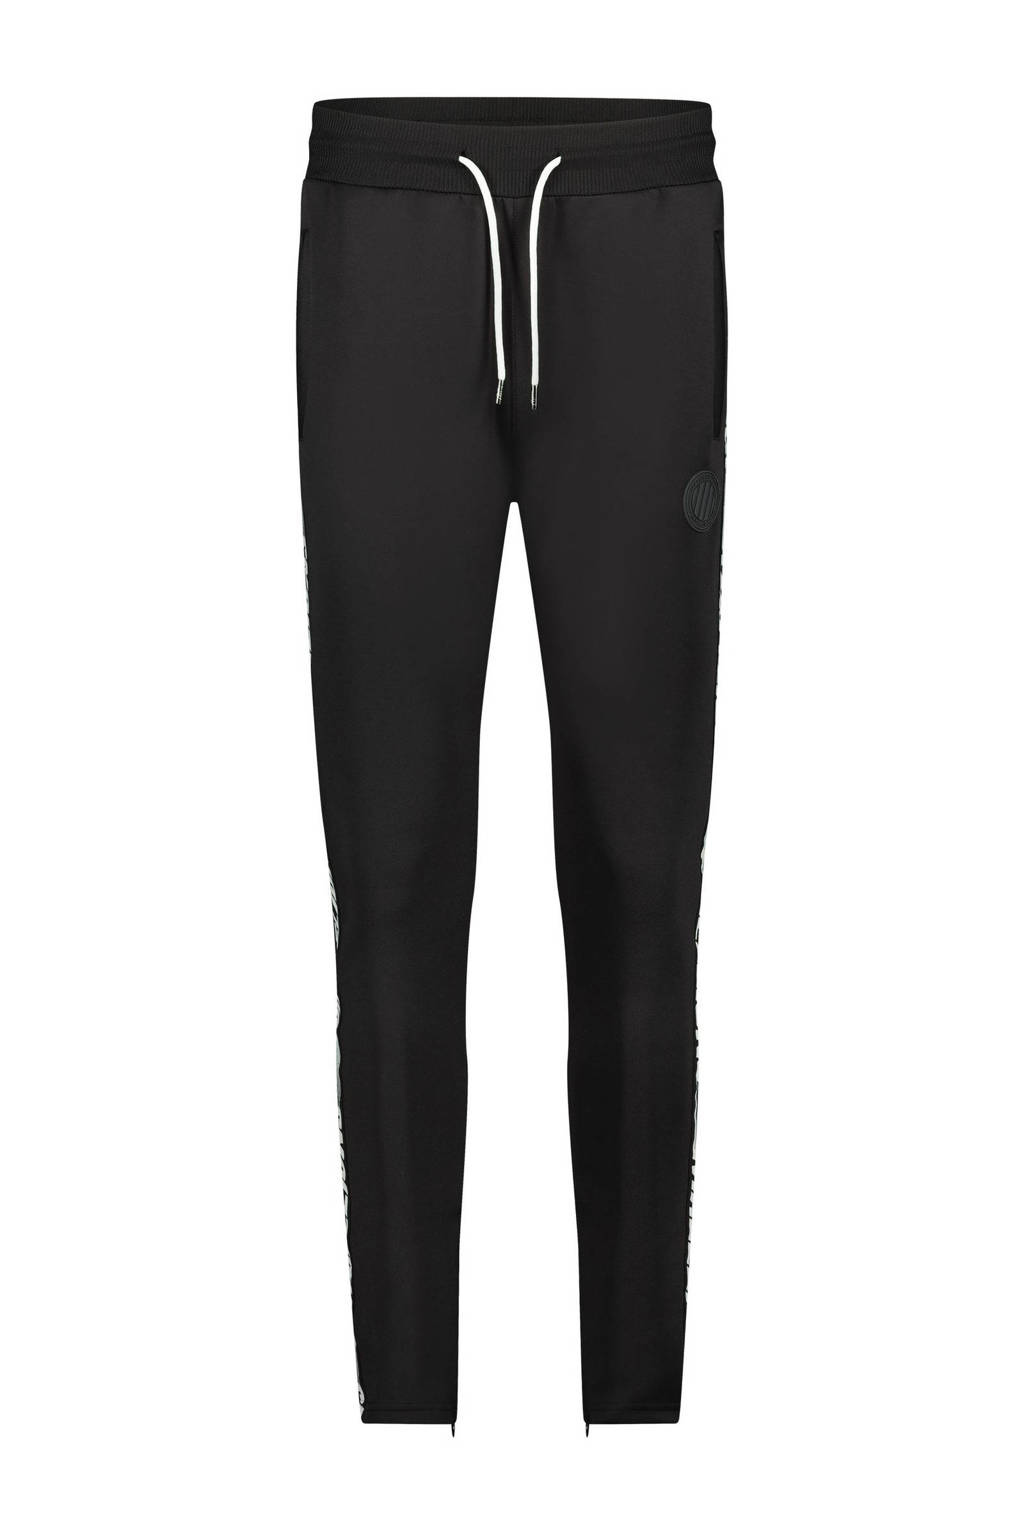 Malelions tapered fit joggingbroek Trackpants Striker met zijstreep zwart/wit, Zwart/wit